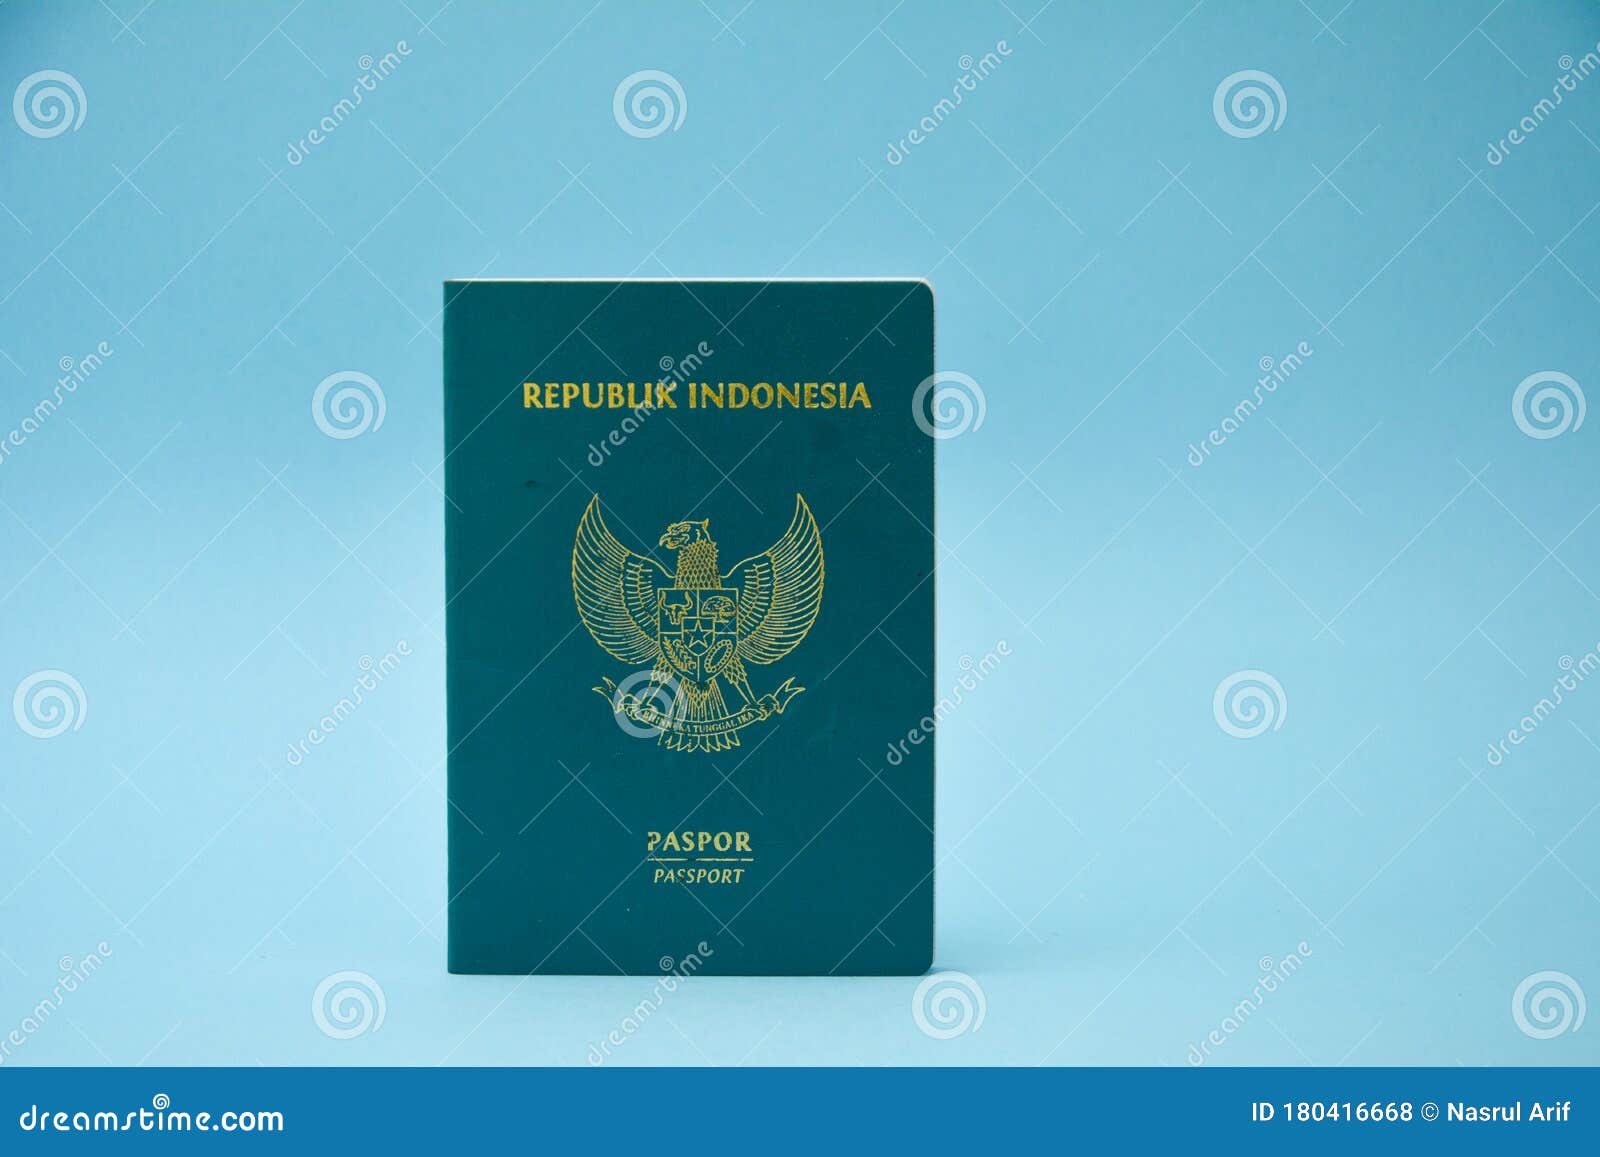 Nếu bạn đang có ý định đi du lịch Indonesia, hãy xem hình ảnh hộ chiếu độc đáo này. Nó sẽ đưa bạn đến với một quốc gia đầy màu sắc, văn hóa đa dạng và những danh thắng nổi tiếng. Hãy cùng đắm mình trong hình ảnh để cảm nhận sự trải nghiệm tuyệt vời này!